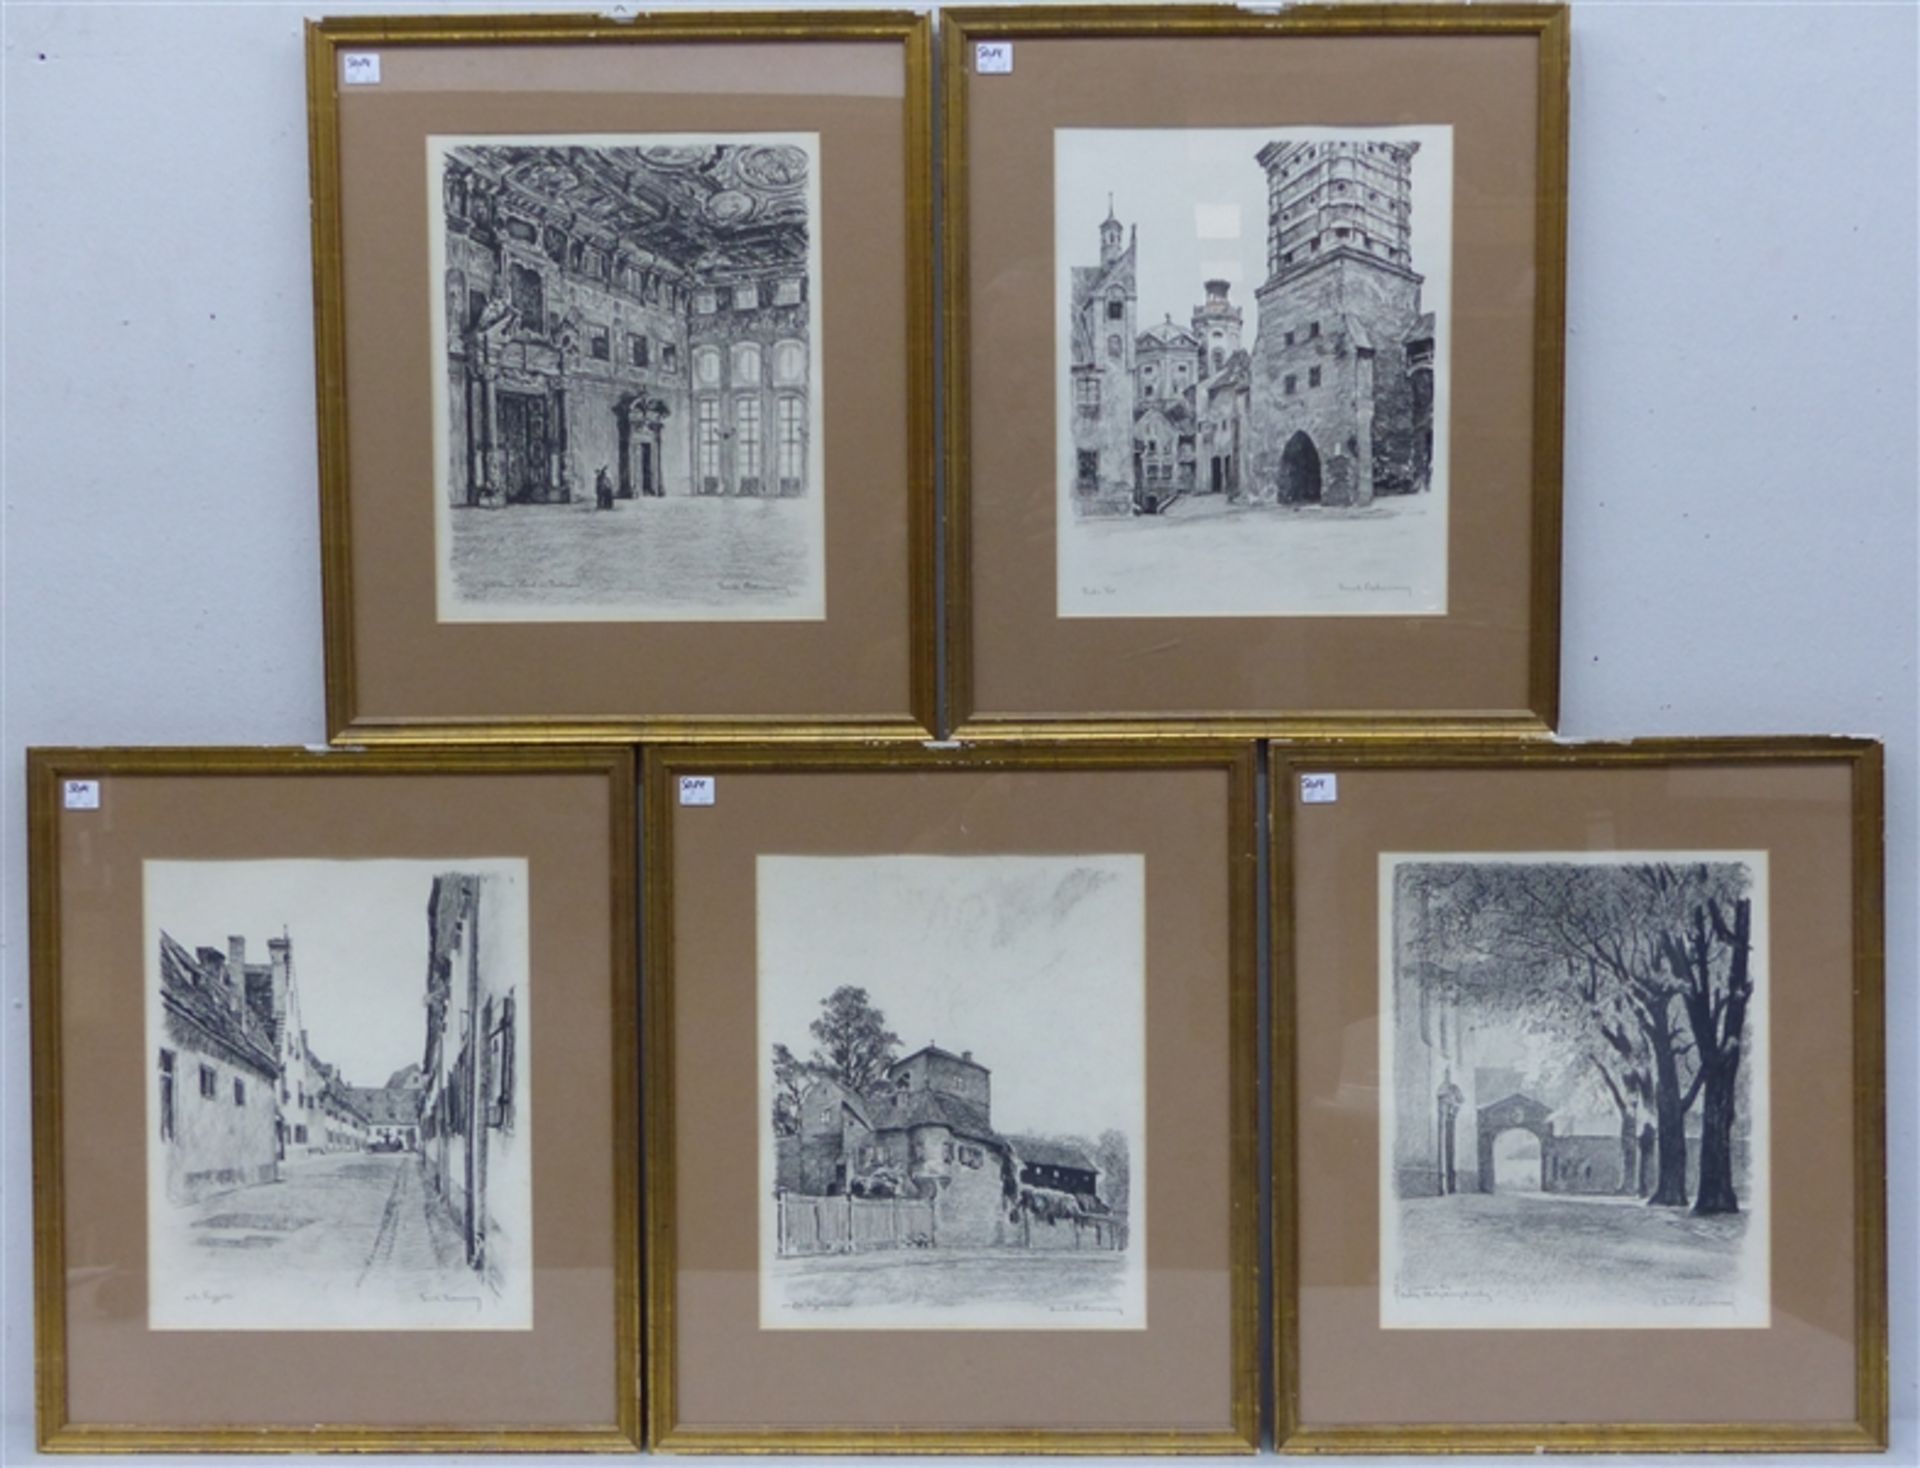 5 Radierungen von Ernst Liebermann, Vogelmauer, goldener Saal, Kirchturm, rotes Tor, Fuggerei, je